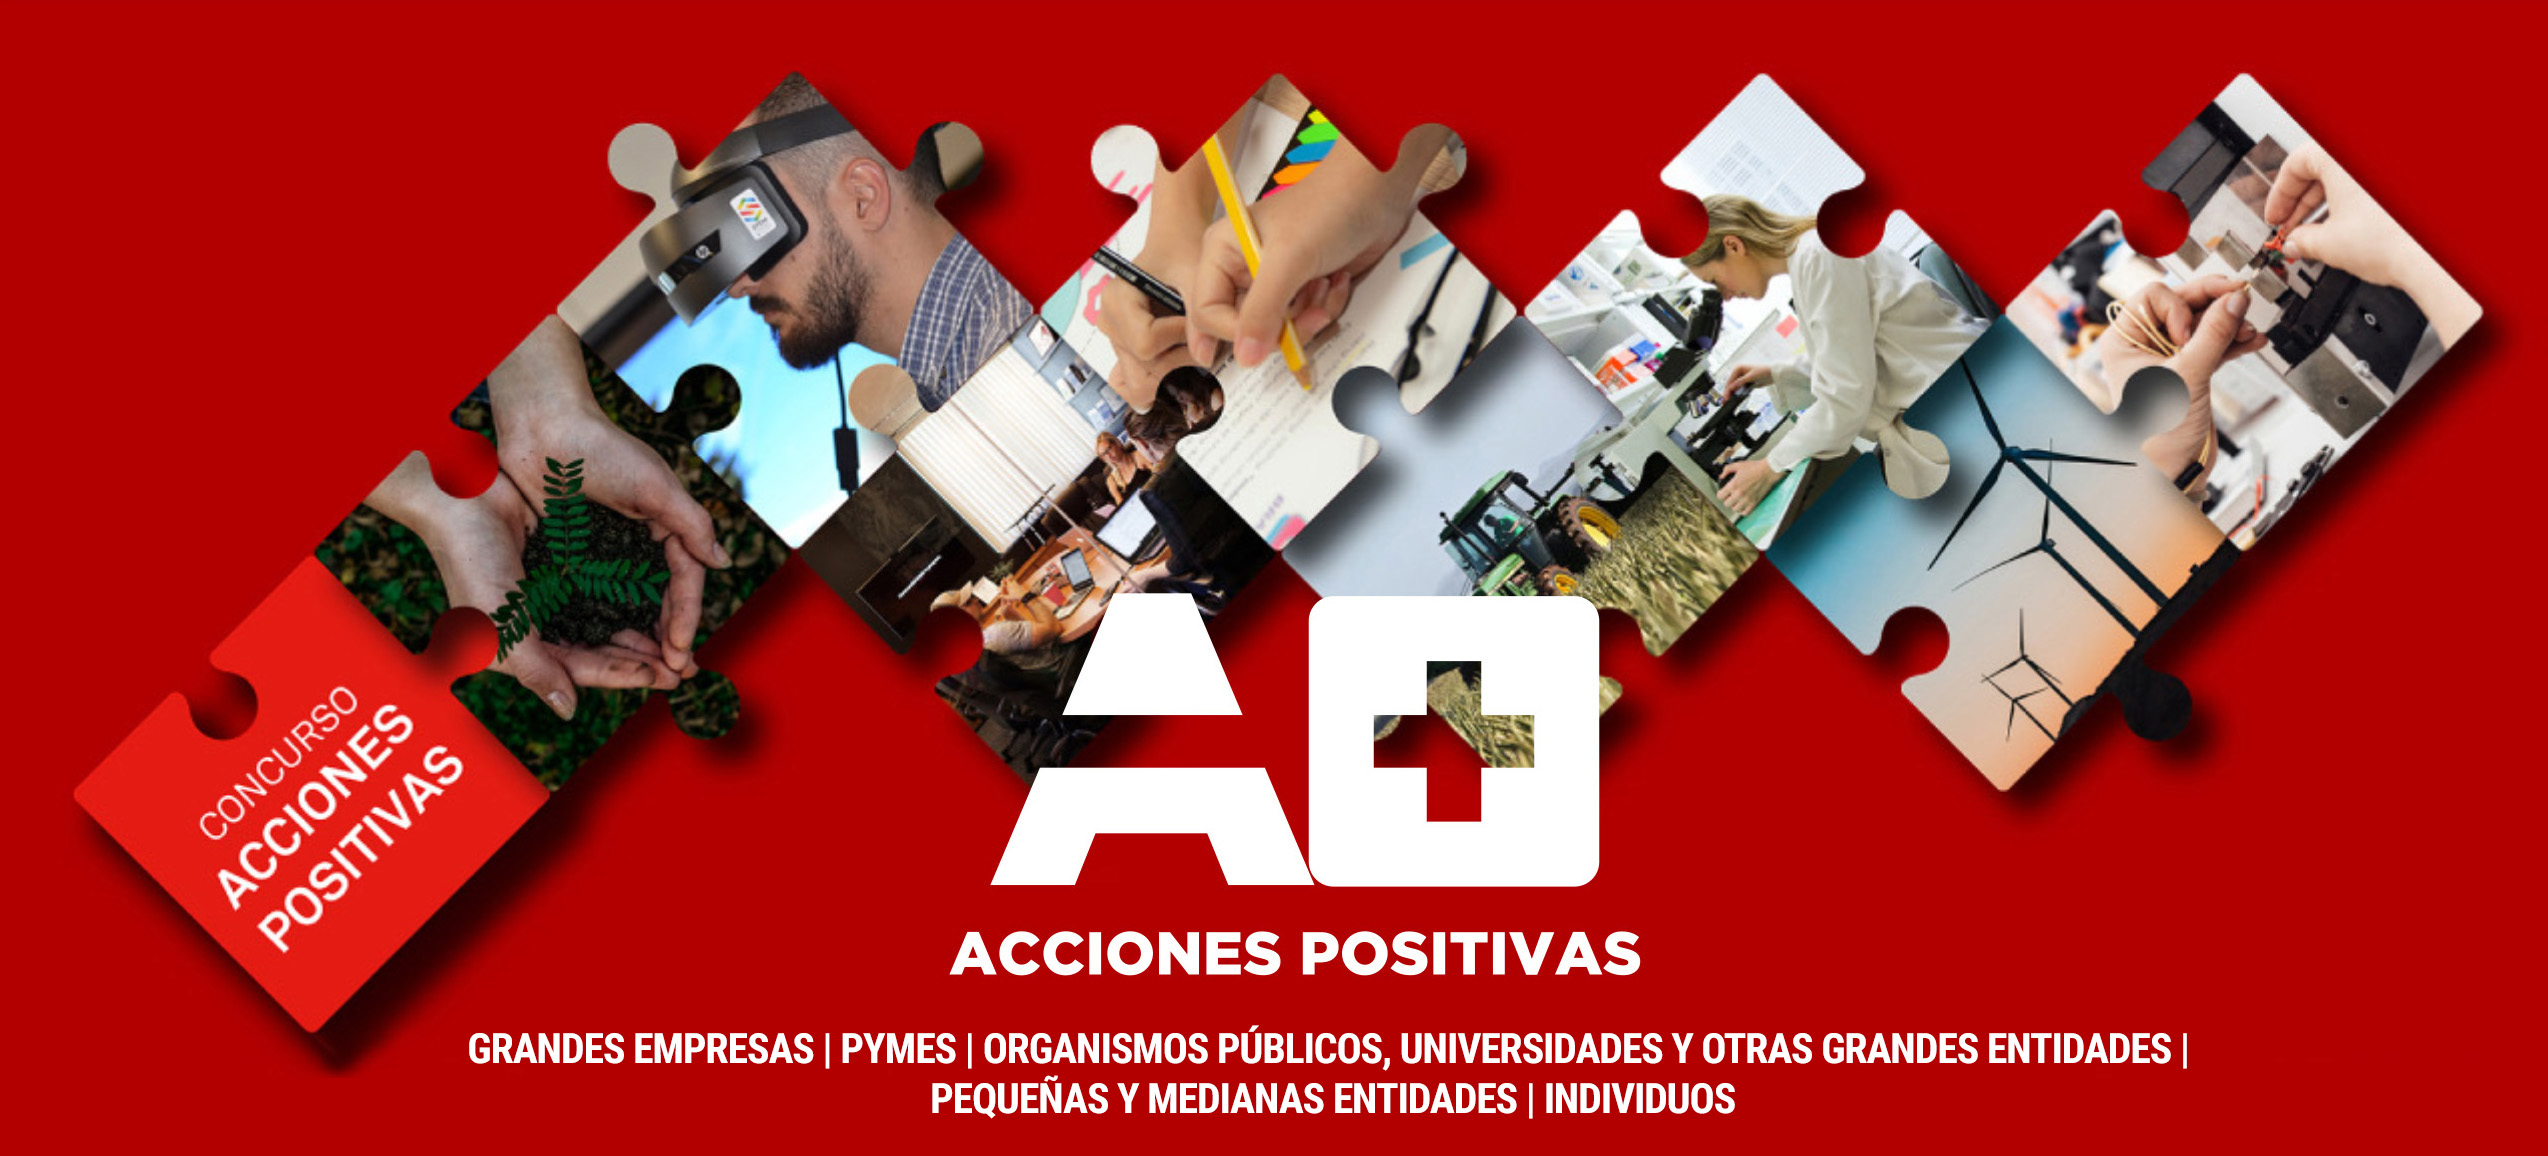 La Cámara de Comercio Suizo Argentina lanza la cuarta edición del premio “Acciones Positiva